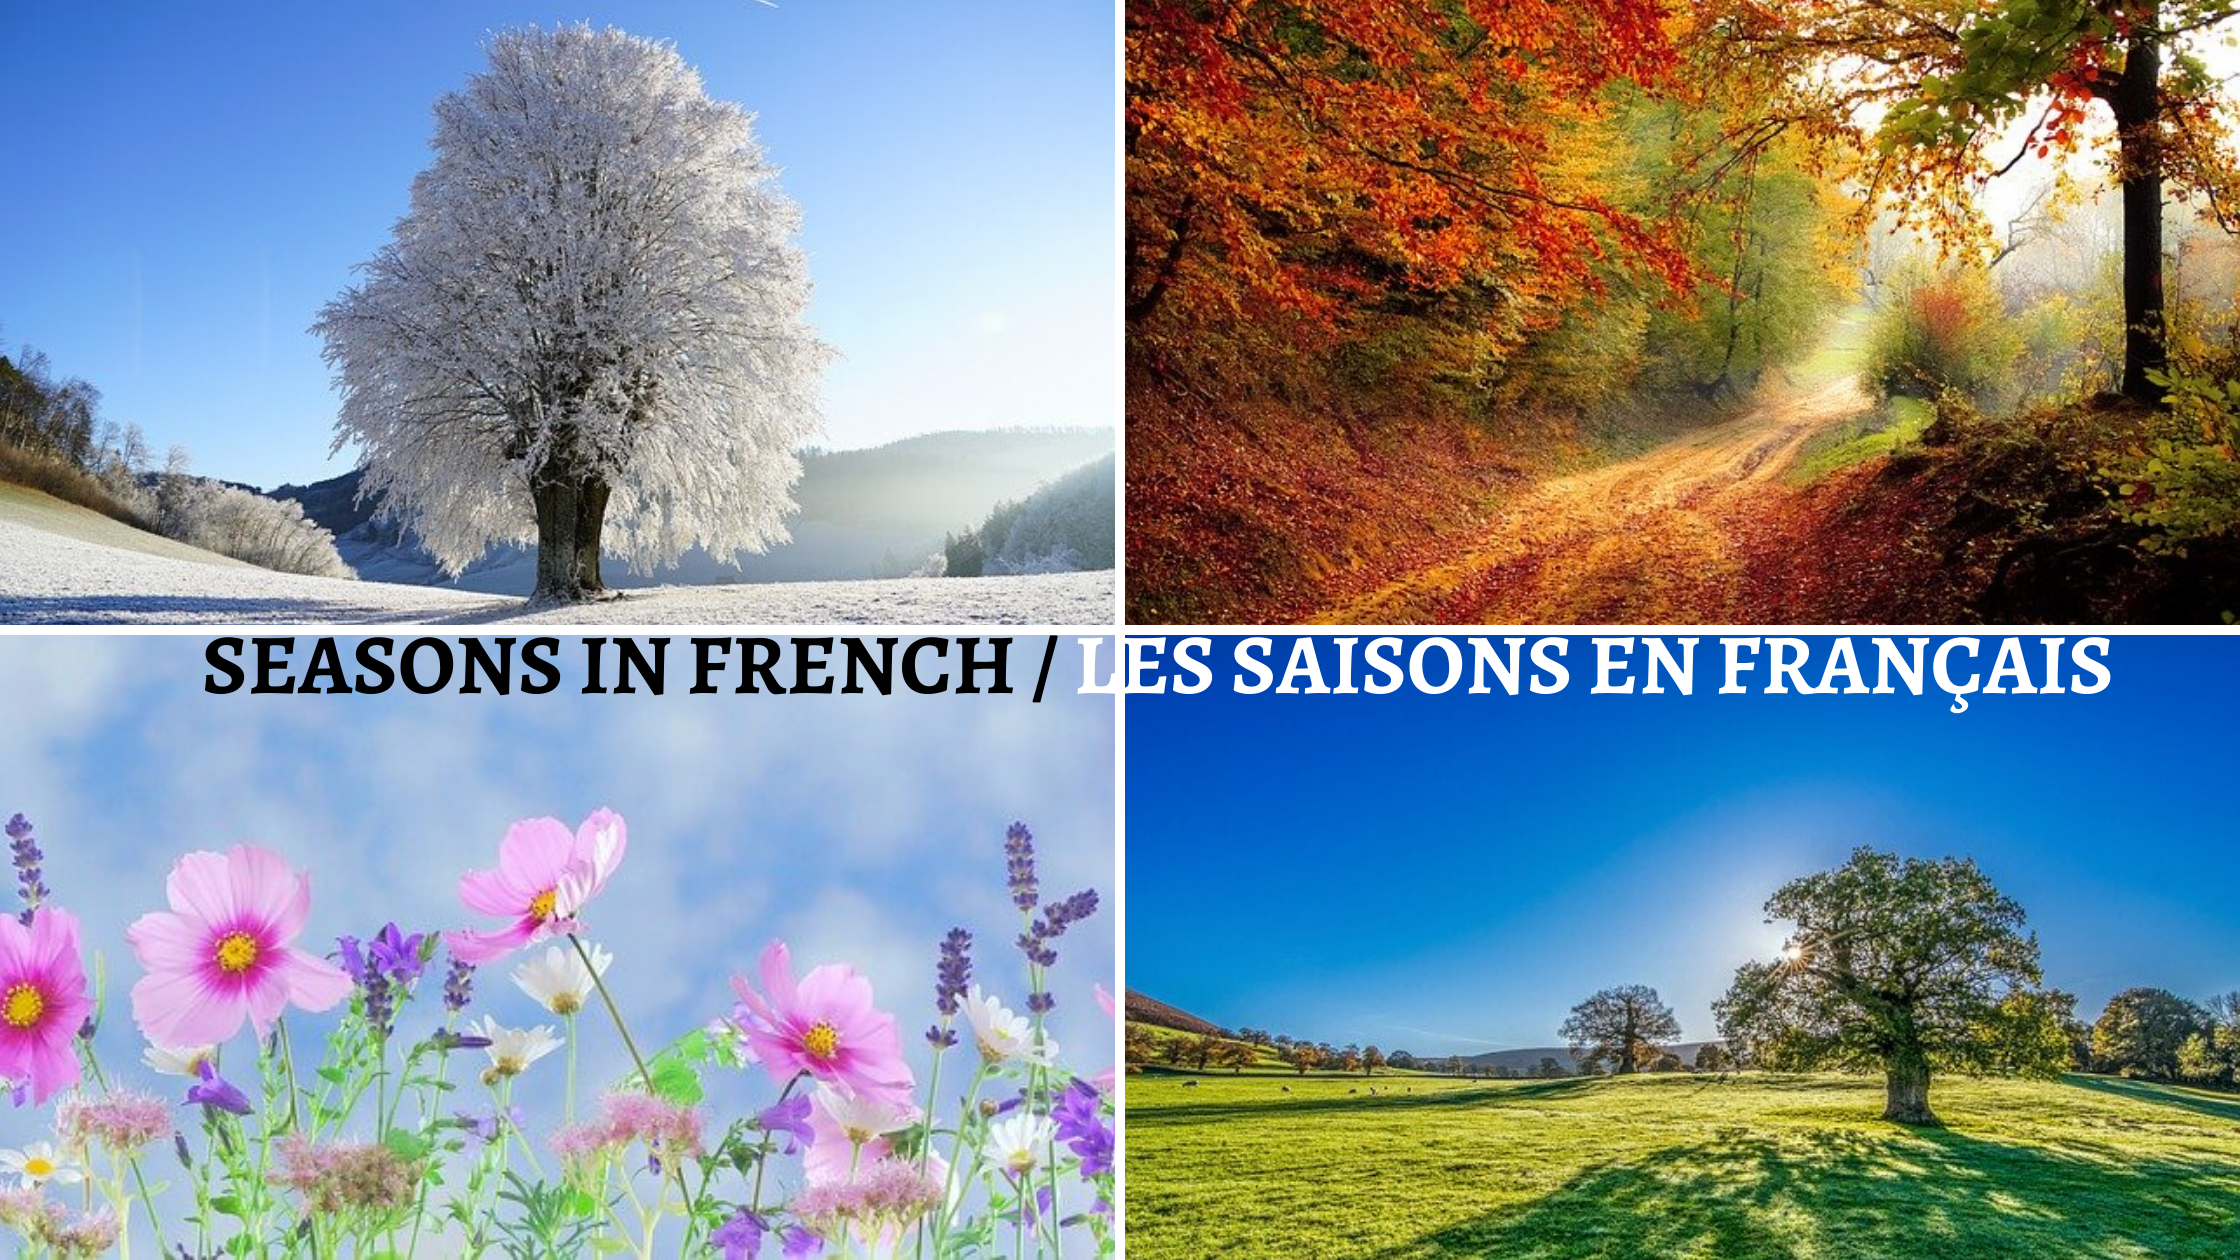 Seasons in French / Les Saisons en Français